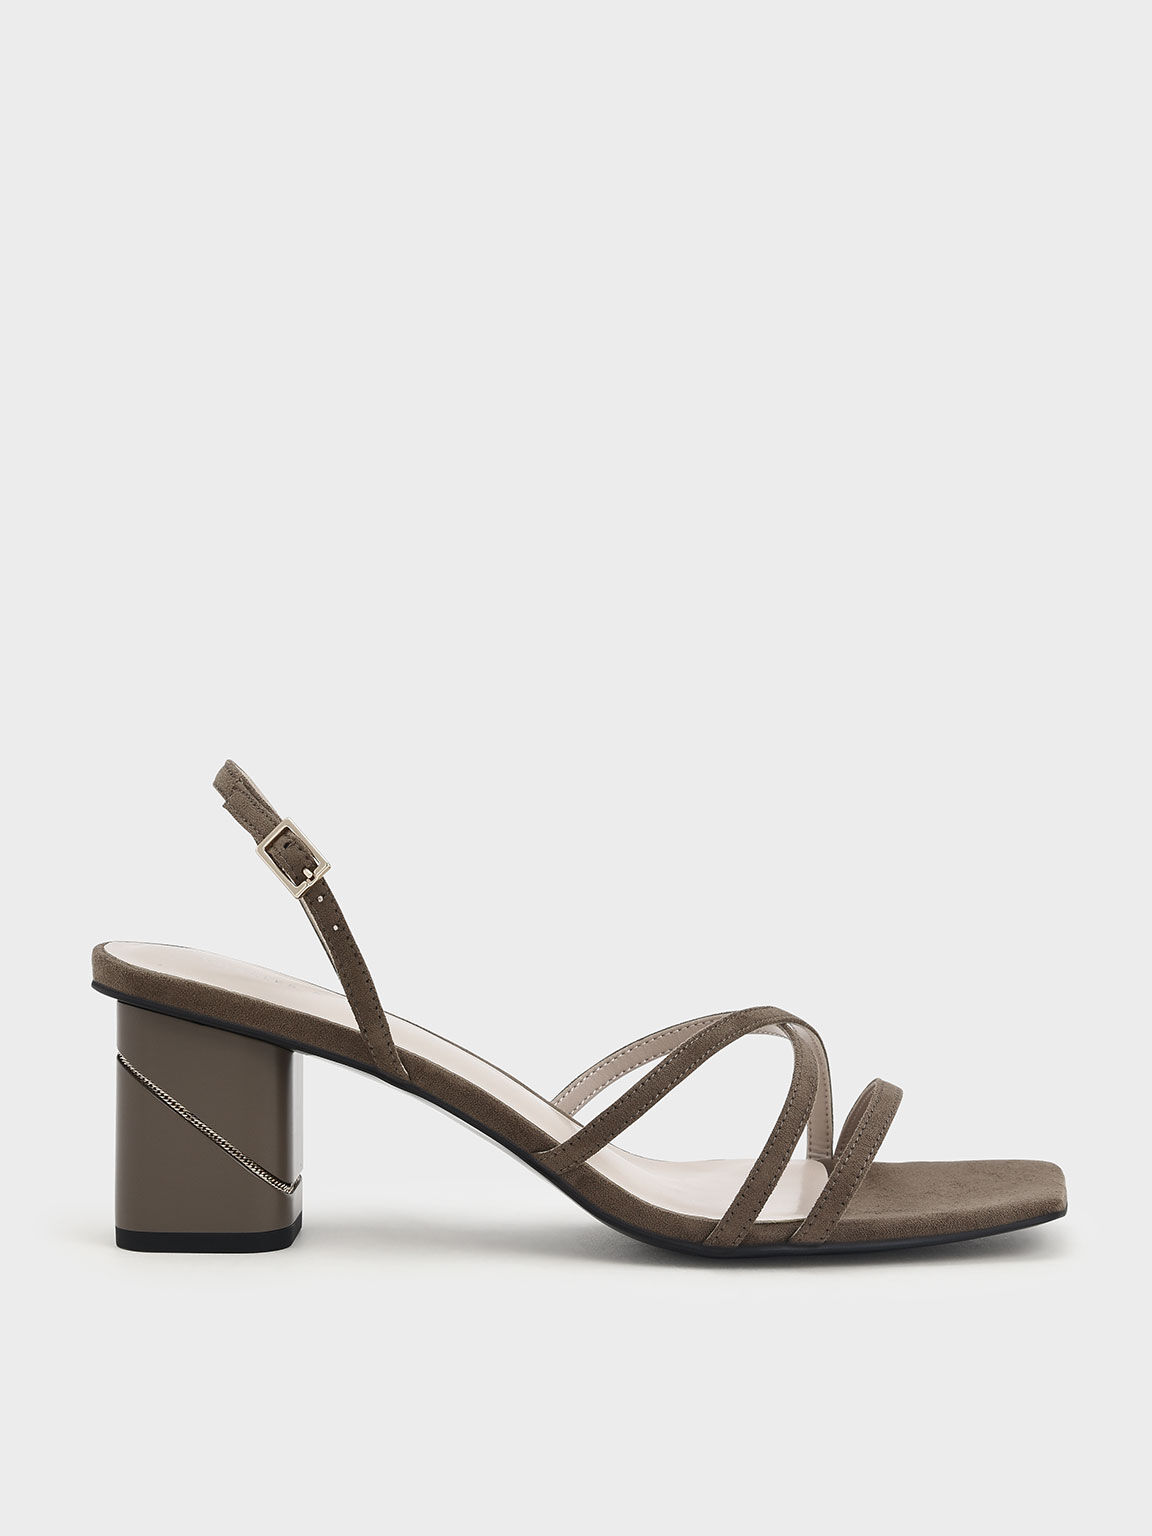 Square Toe Slingback Sandals, Olive, hi-res